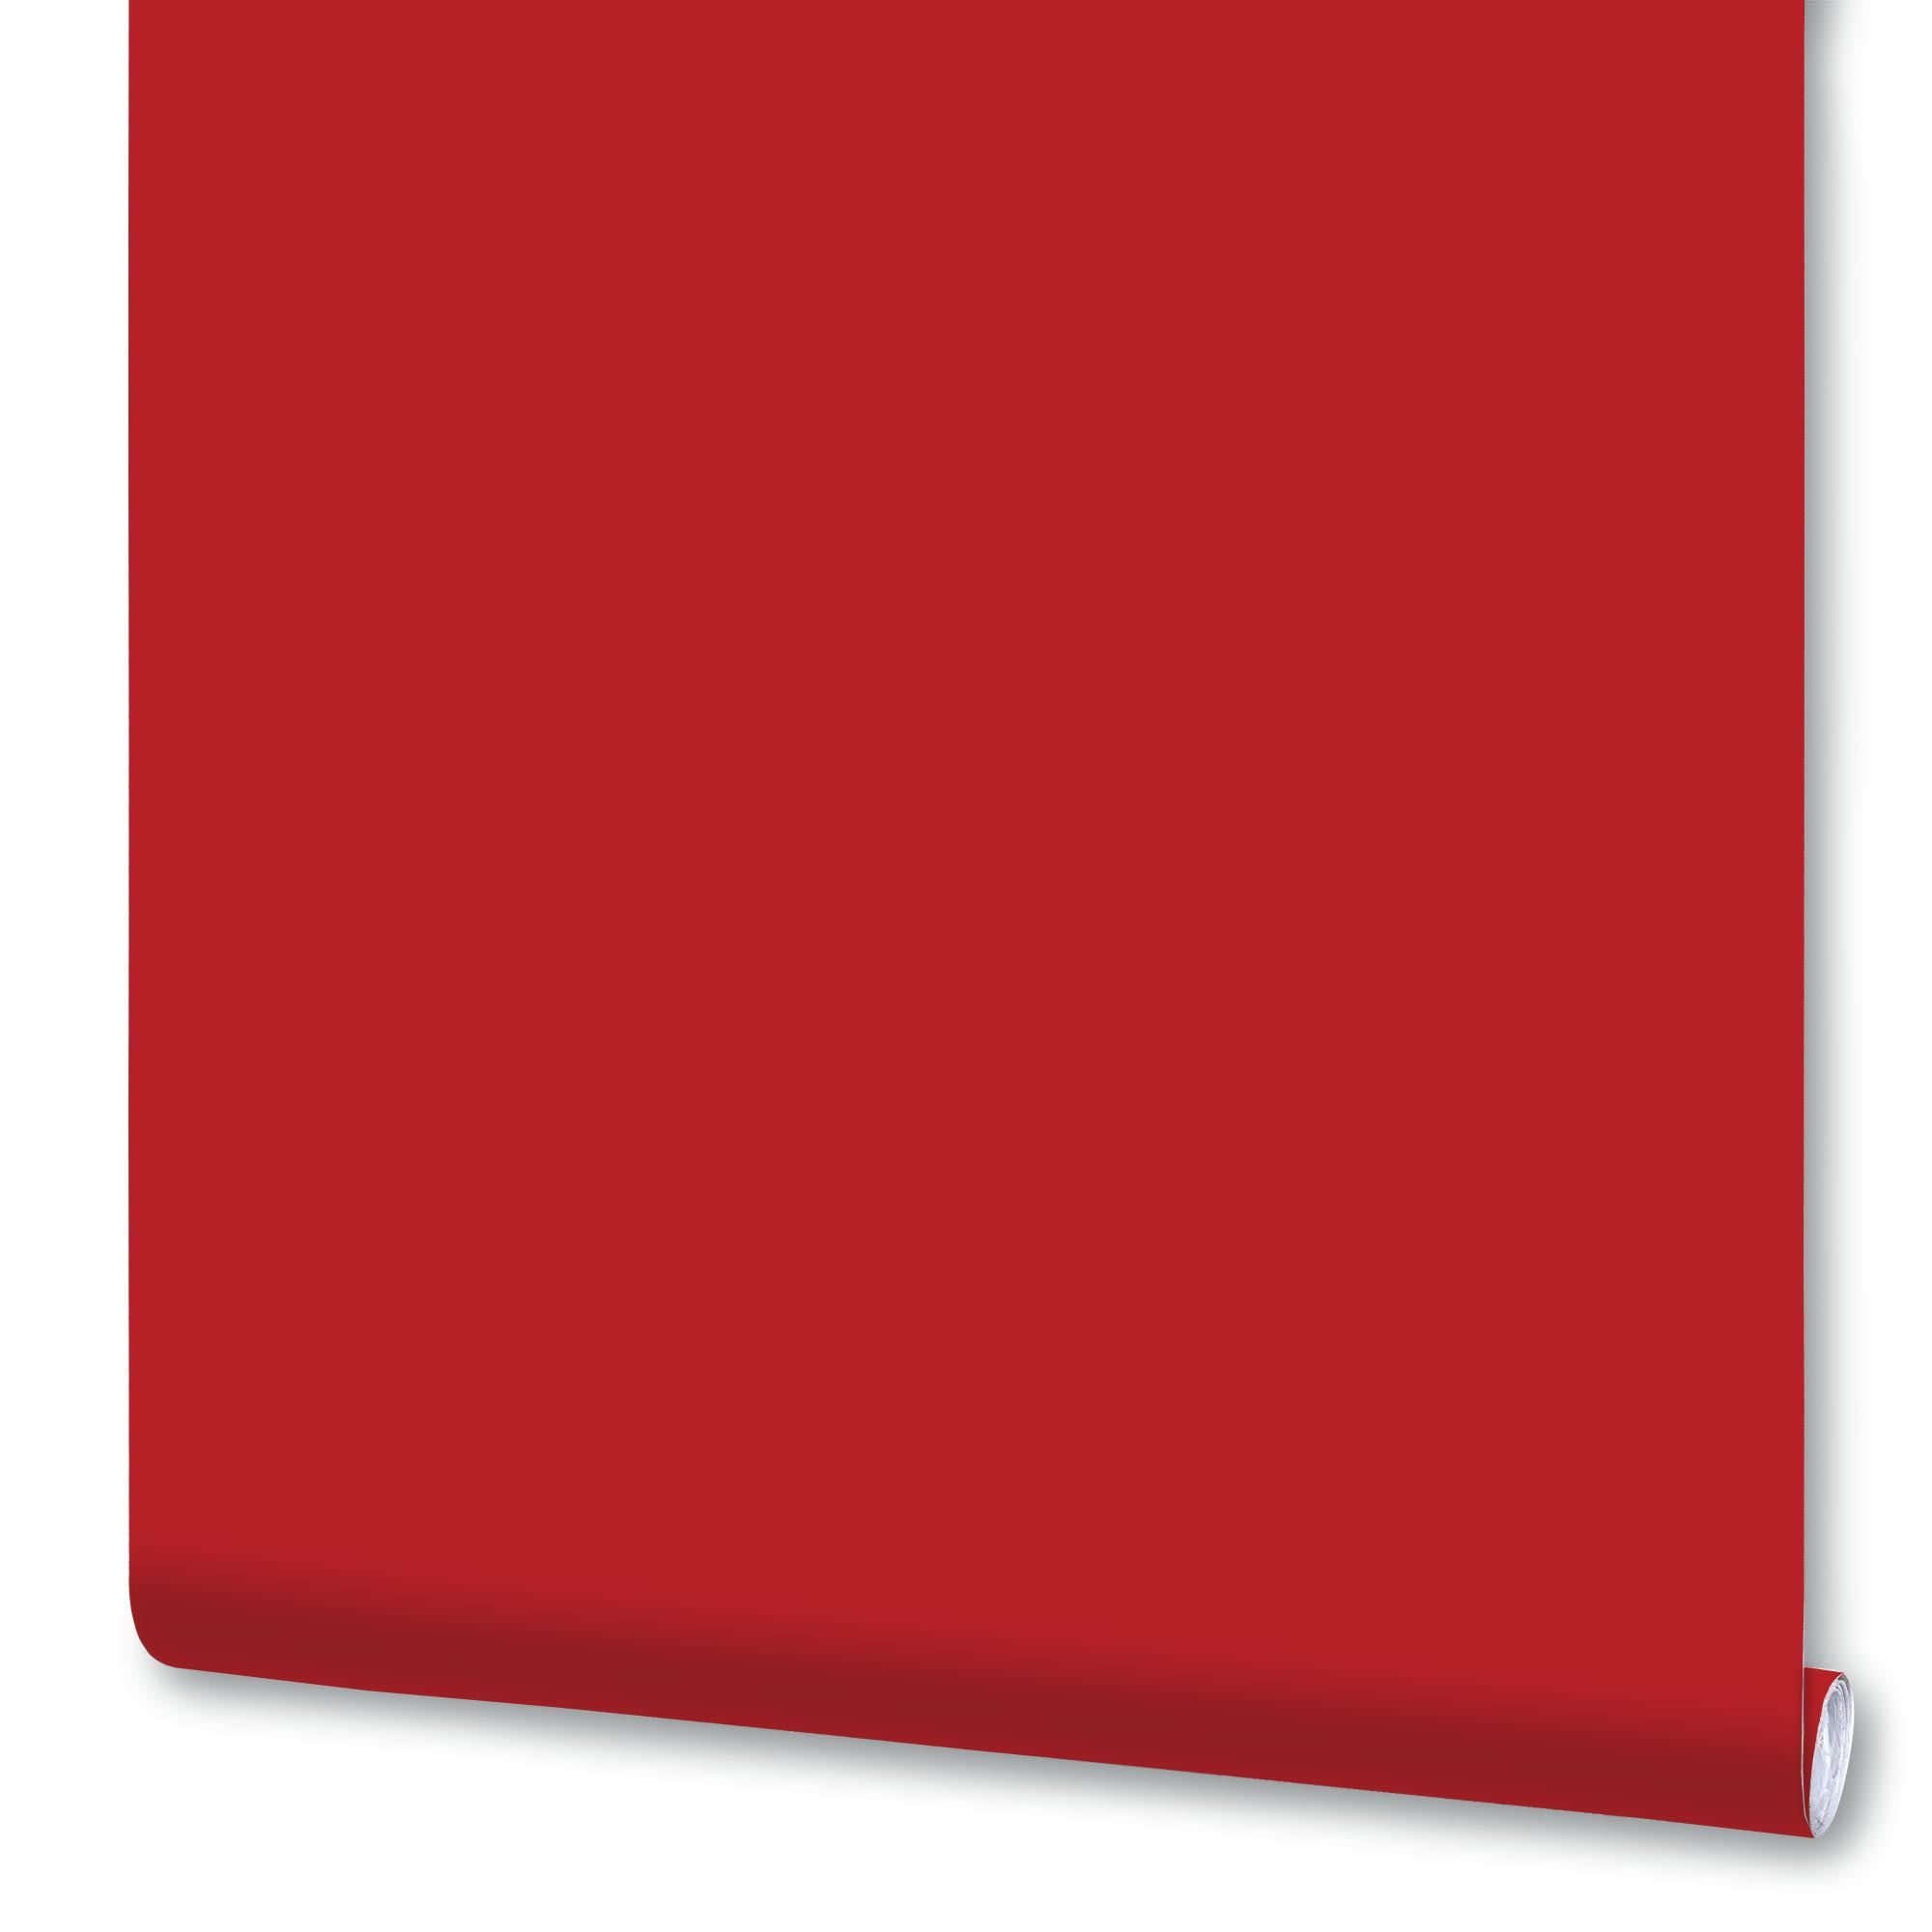 Плёнка Deluxe самоклеящаяся, 0,45x2 м, рубиново-красная, глянцевая, 7011В, 1 рулон плёнка deluxe самоклеящаяся 0 45x2 м чёрная глянцевая 7016в 1 рулон